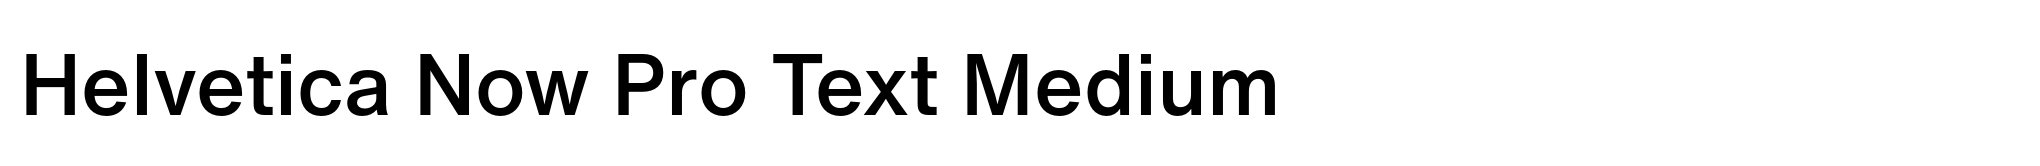 Helvetica Now Pro Text Medium image